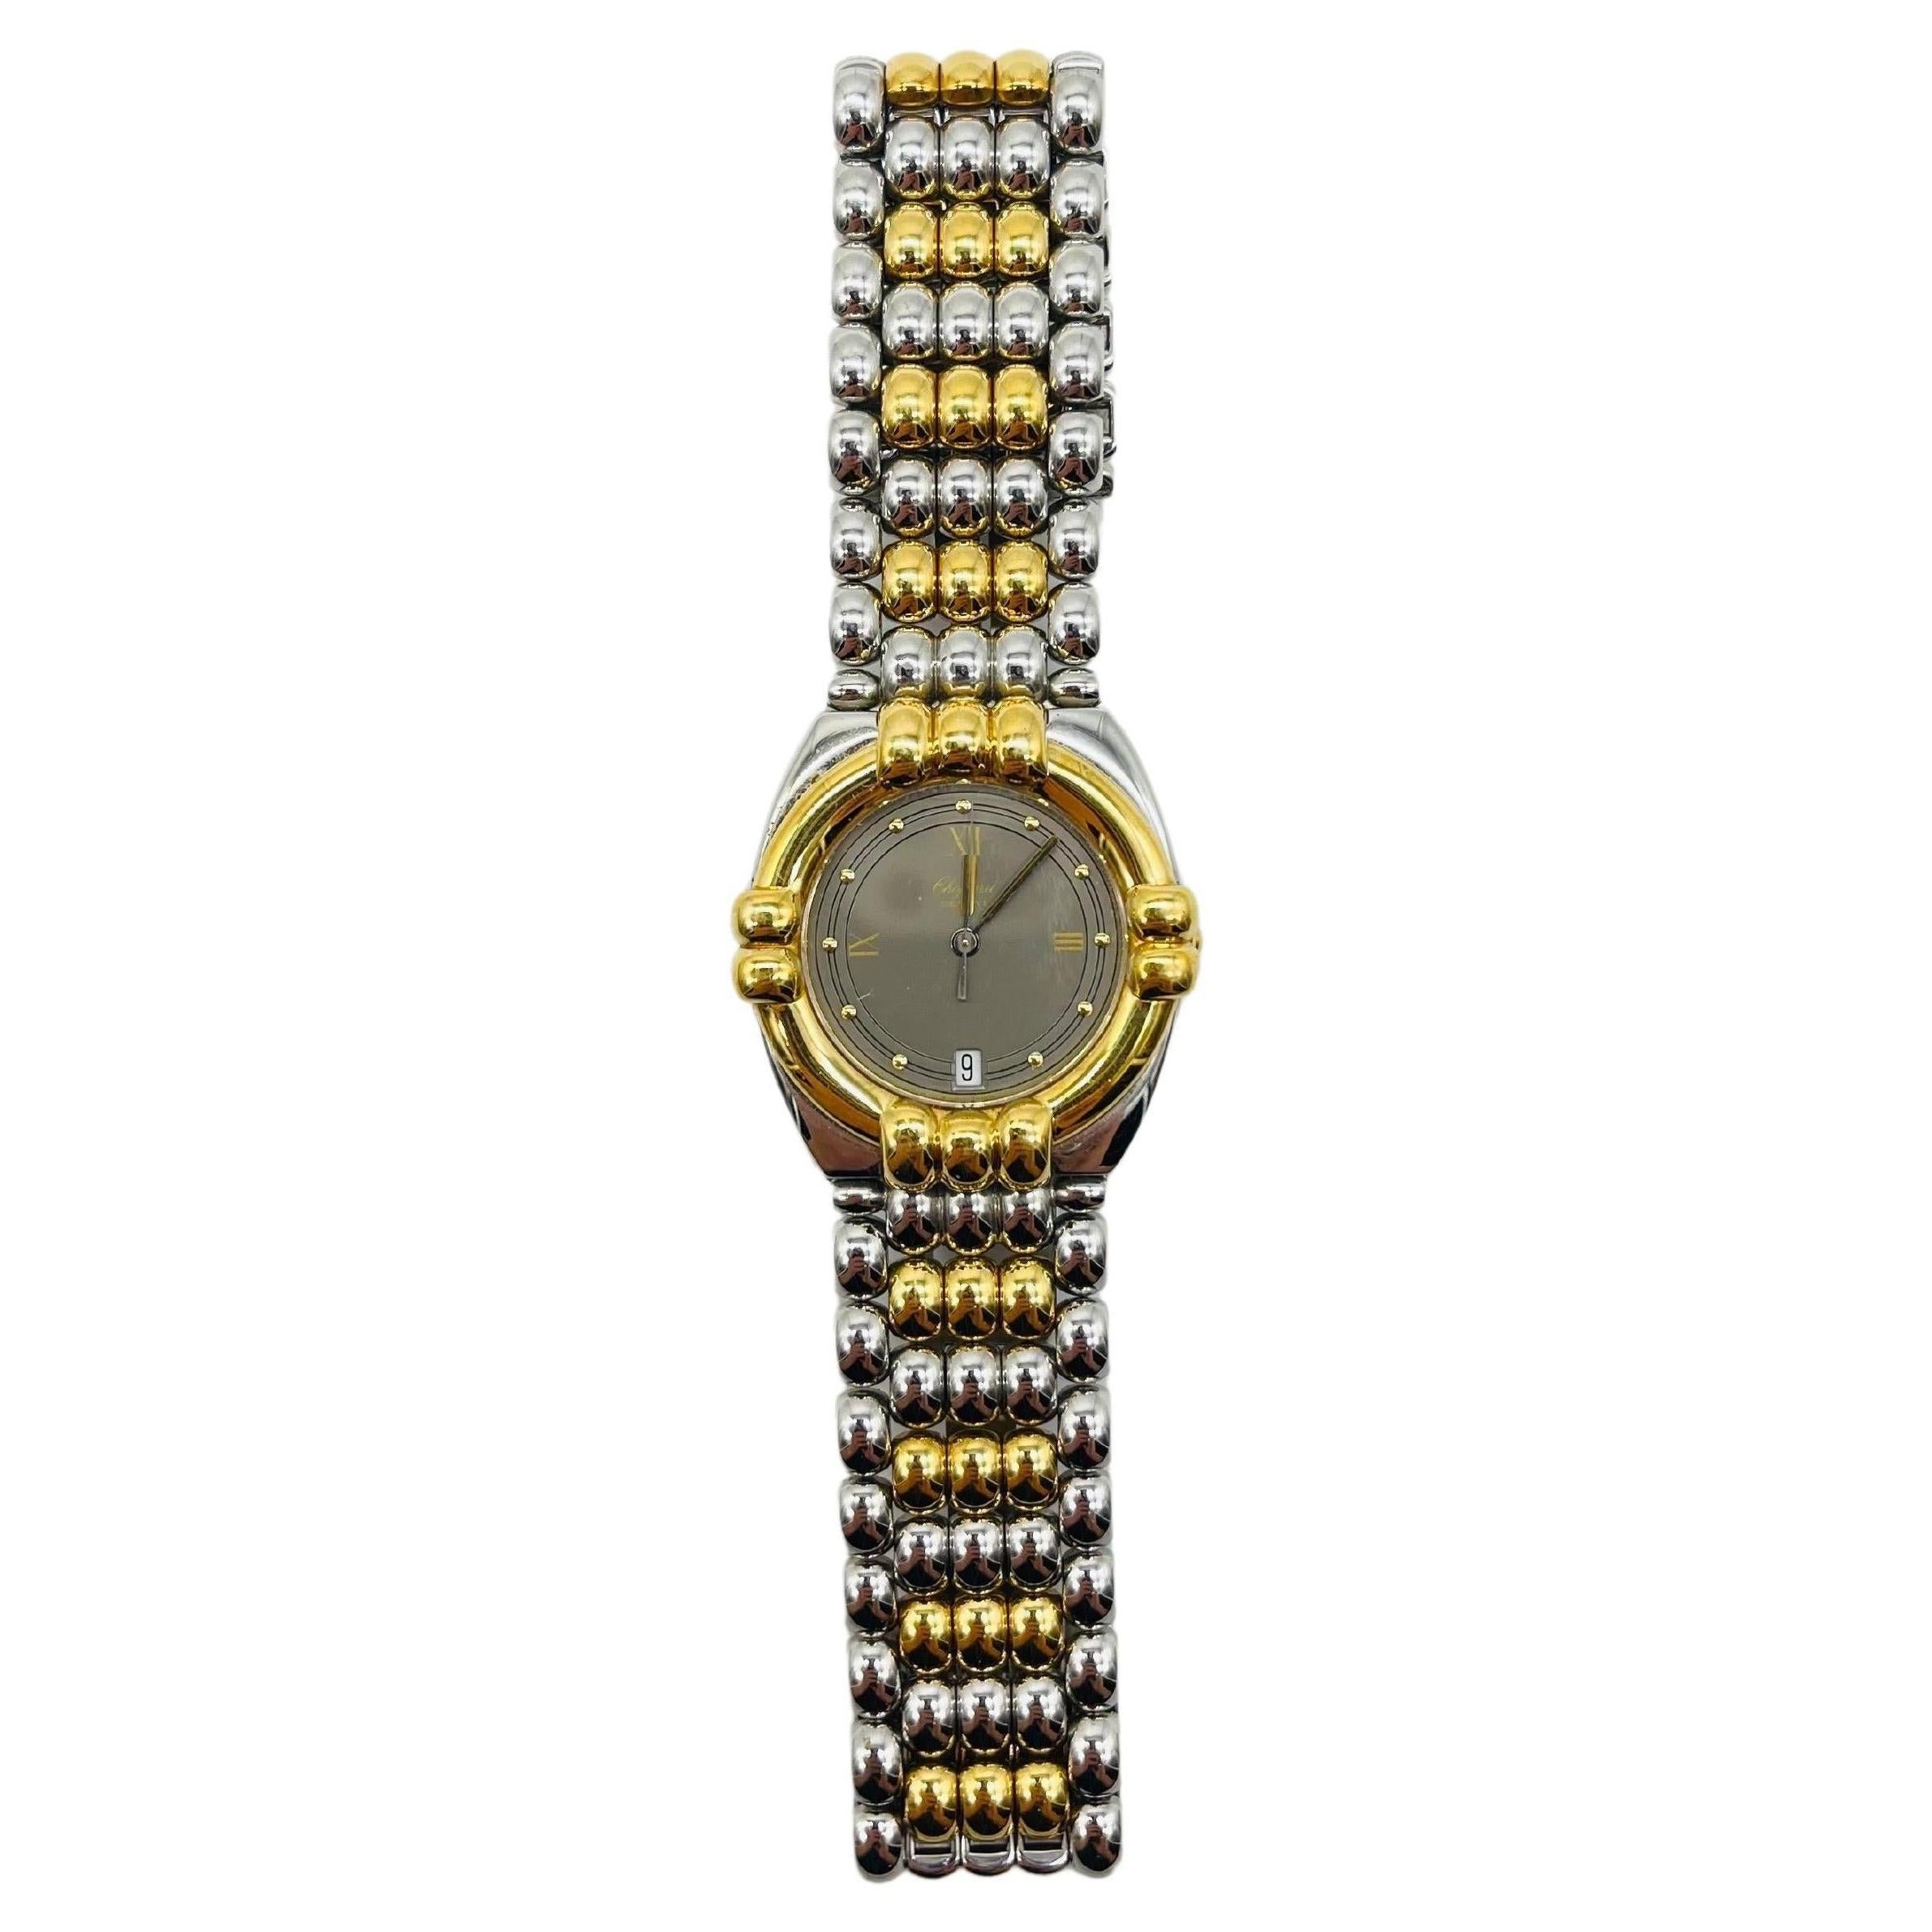 Majestic Chopard genve wrist watch Gstaad 33/8120 For Sale 2